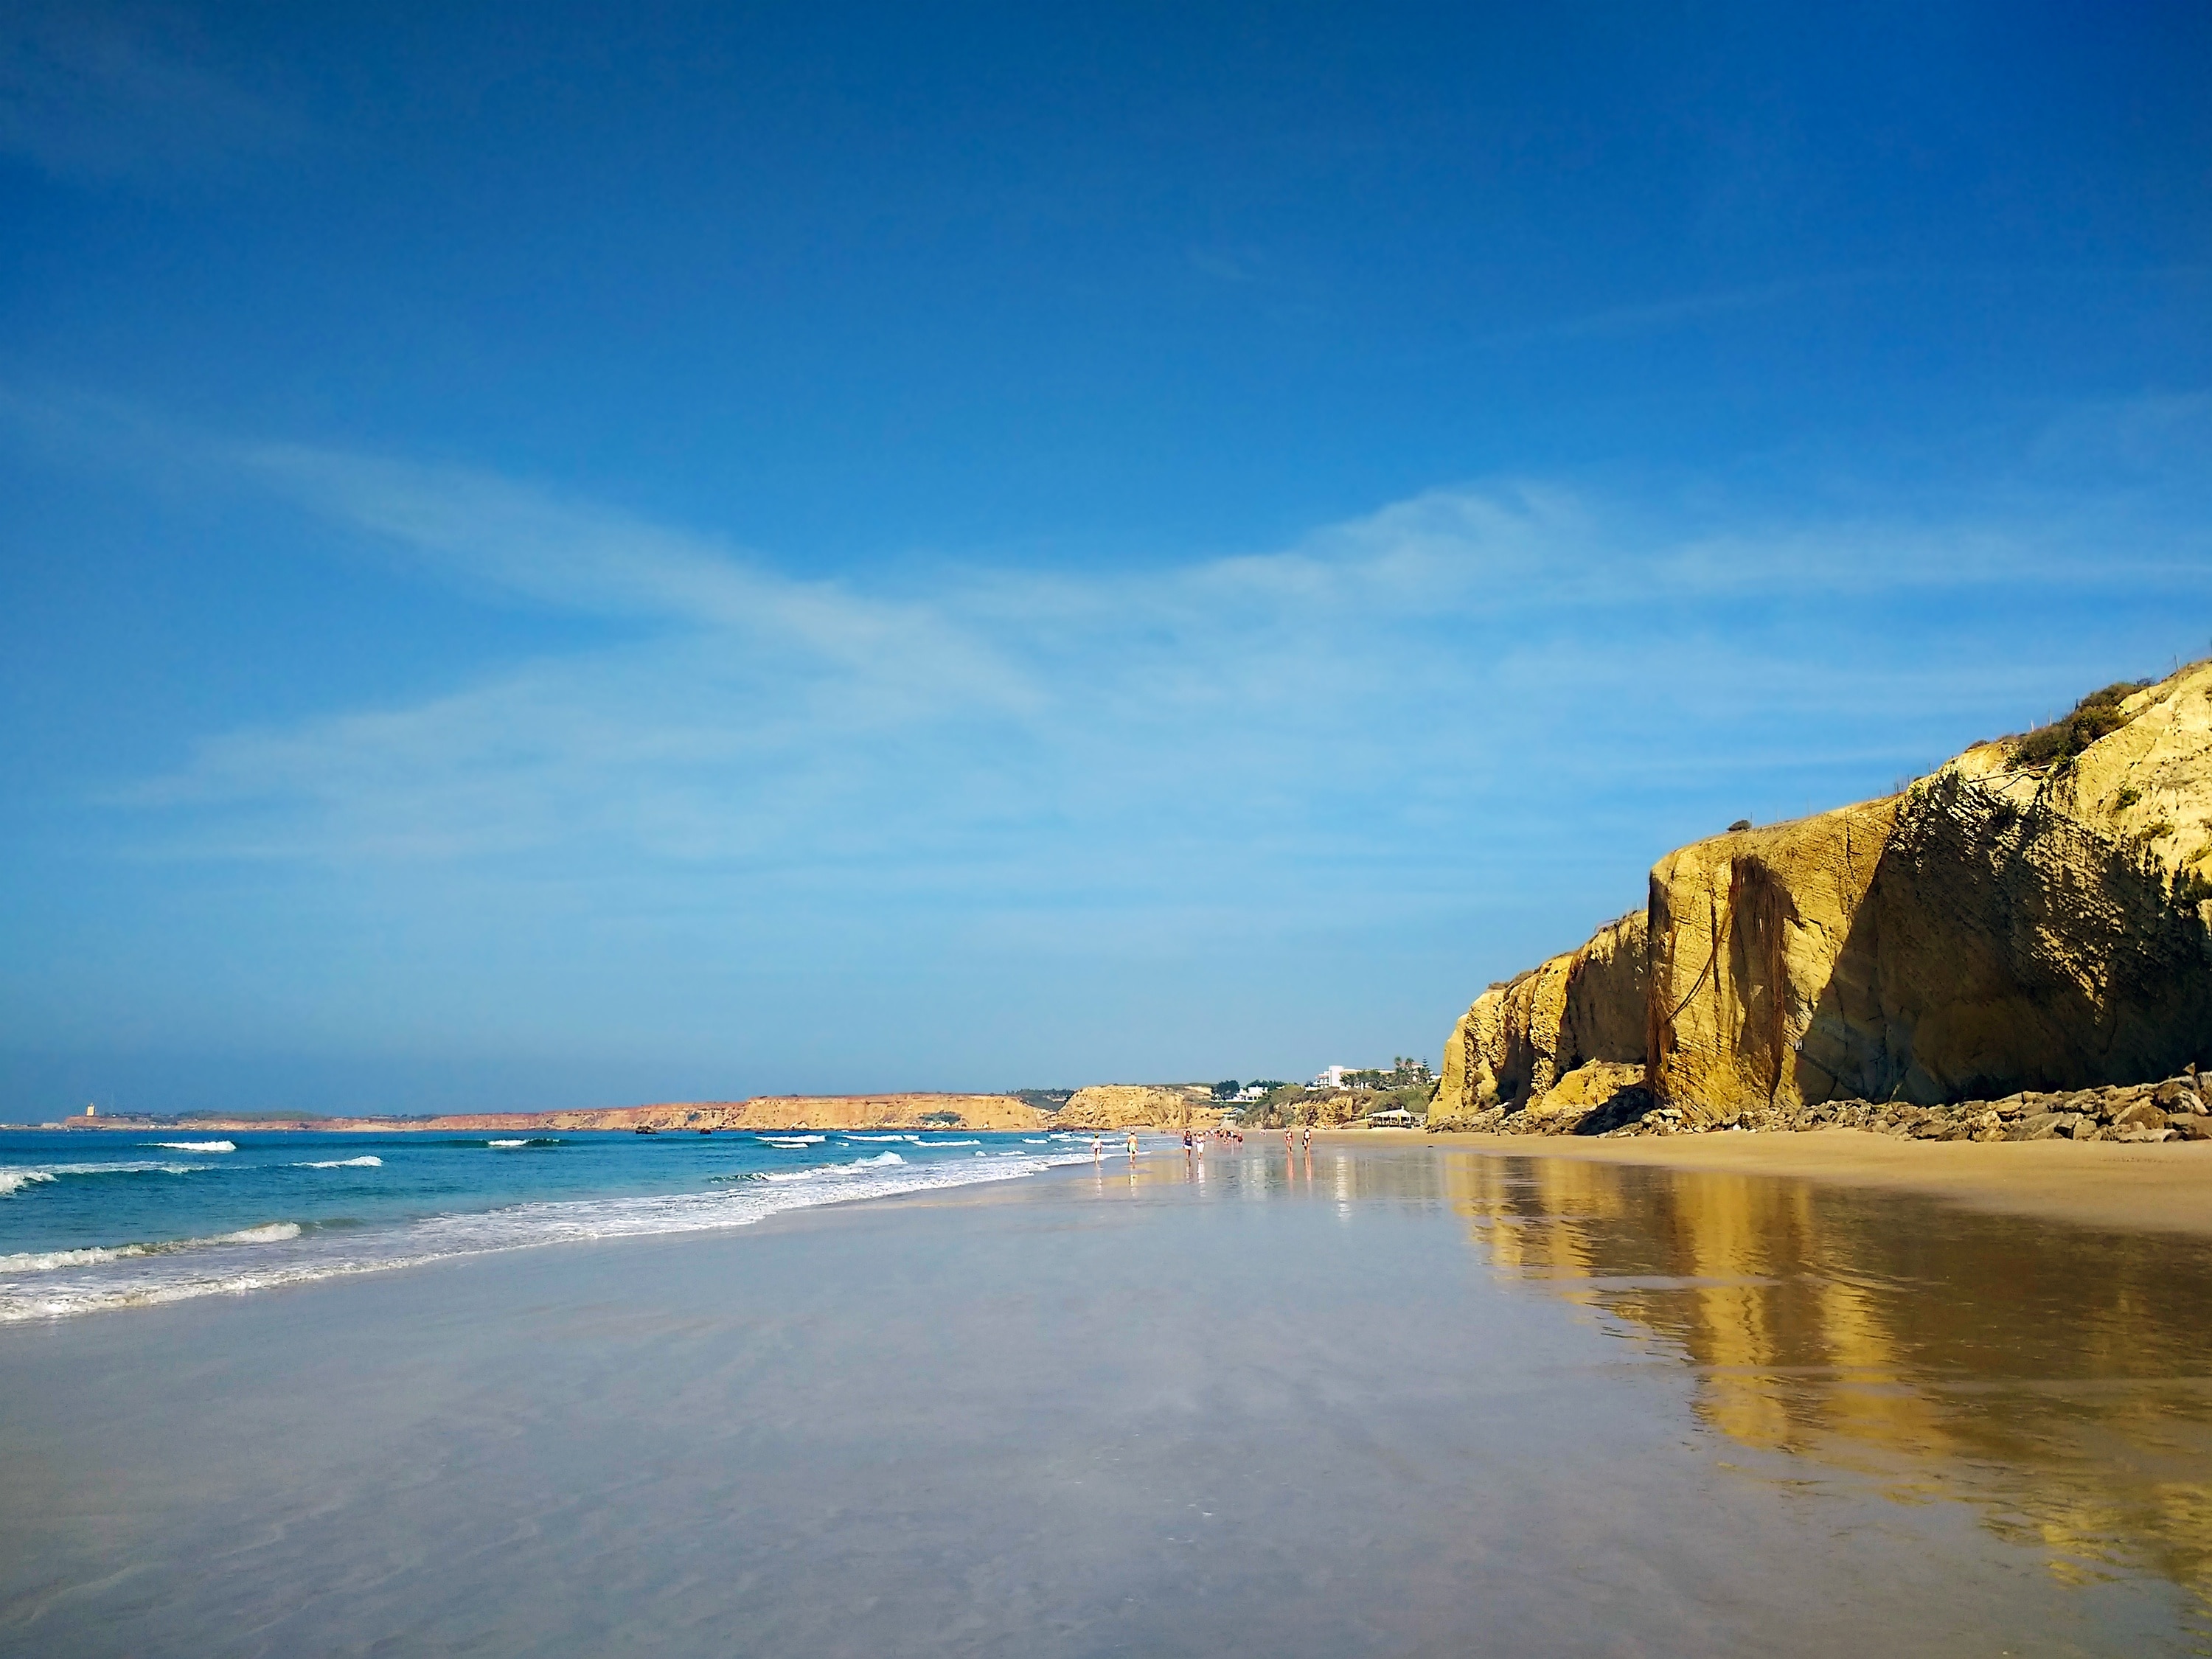 The 5 best beaches in Conil de la Frontera - By Conil Home